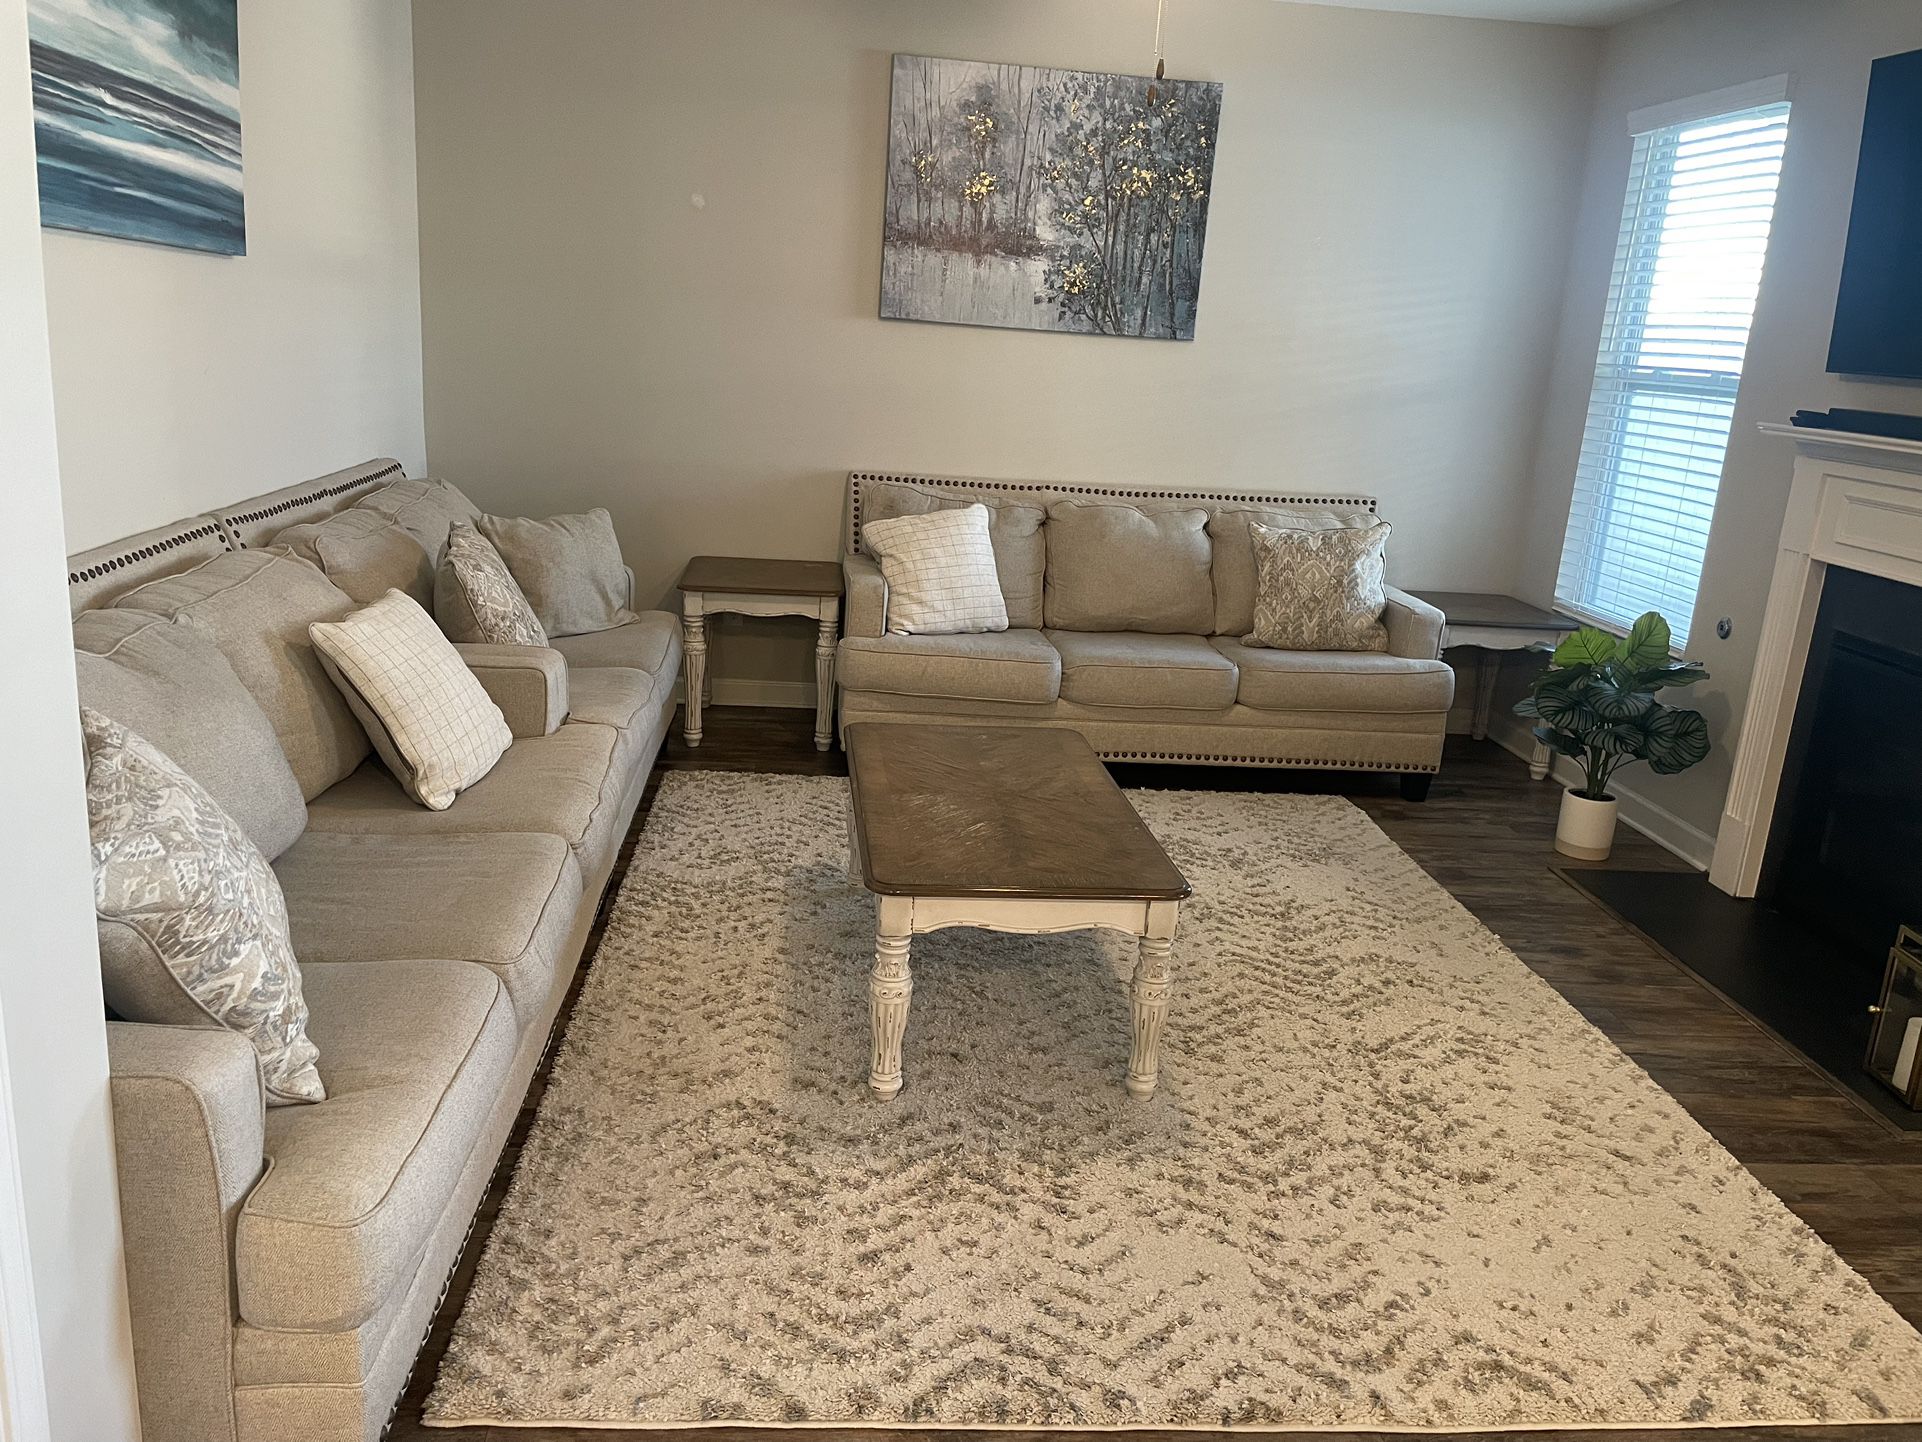 Full Living Room Set